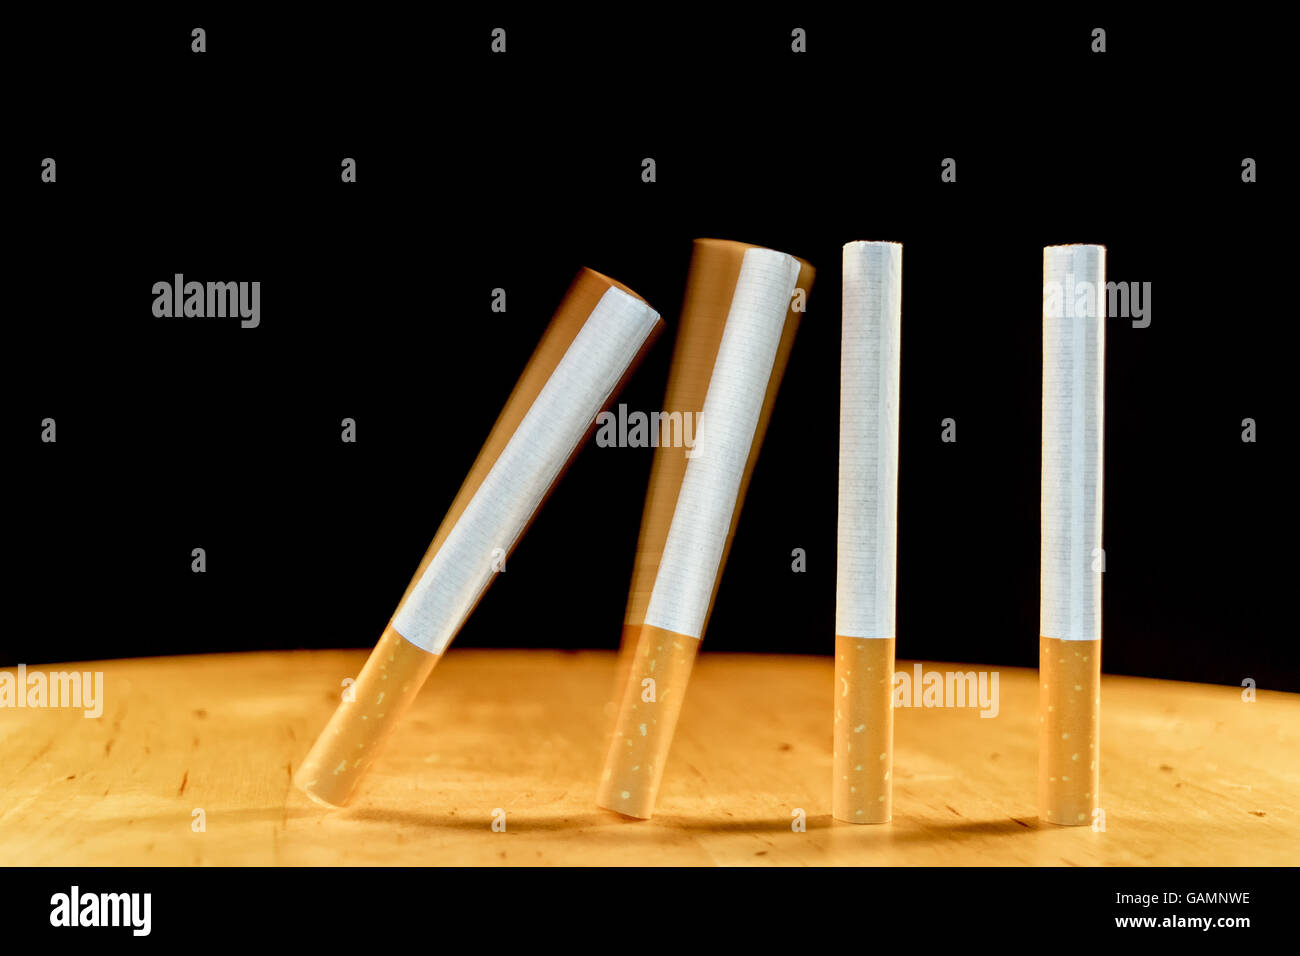 Sigarette domino che cadono come un concetto di dipendenza che sigarette creare. Una sigaretta porta un altro. Foto Stock